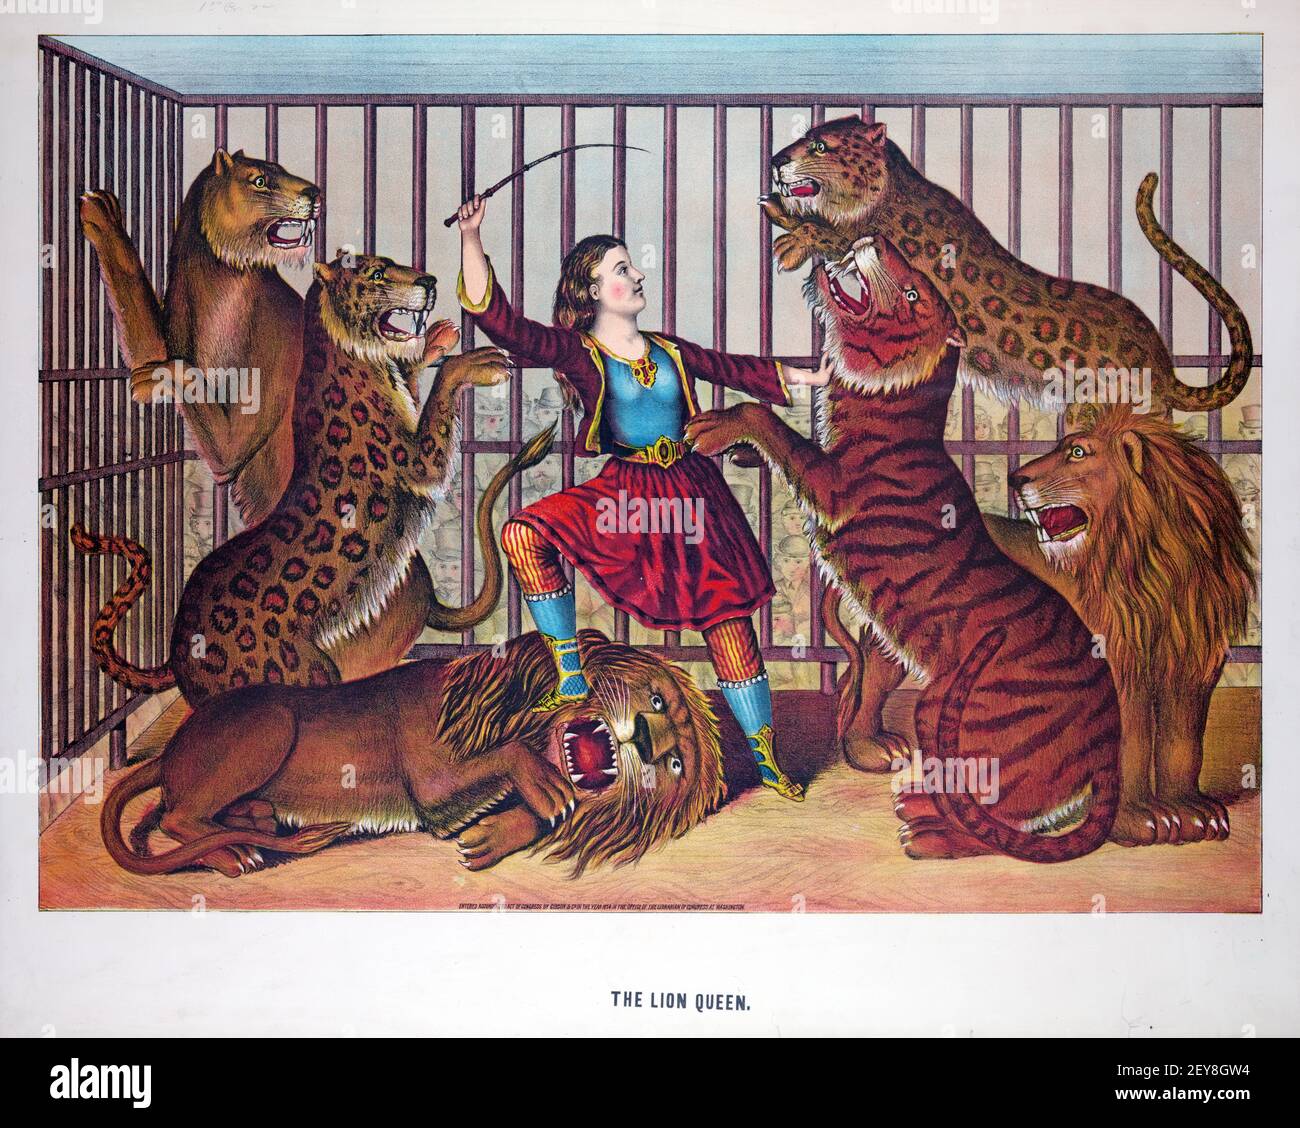 Animal Tamer: Die Königin Der Löwen. Illustration, Frau im Käfig voller Tiger, Leoparden und Löwen. Klassisches Poster / Illustration, alt und Vintage-Stil. Stockfoto